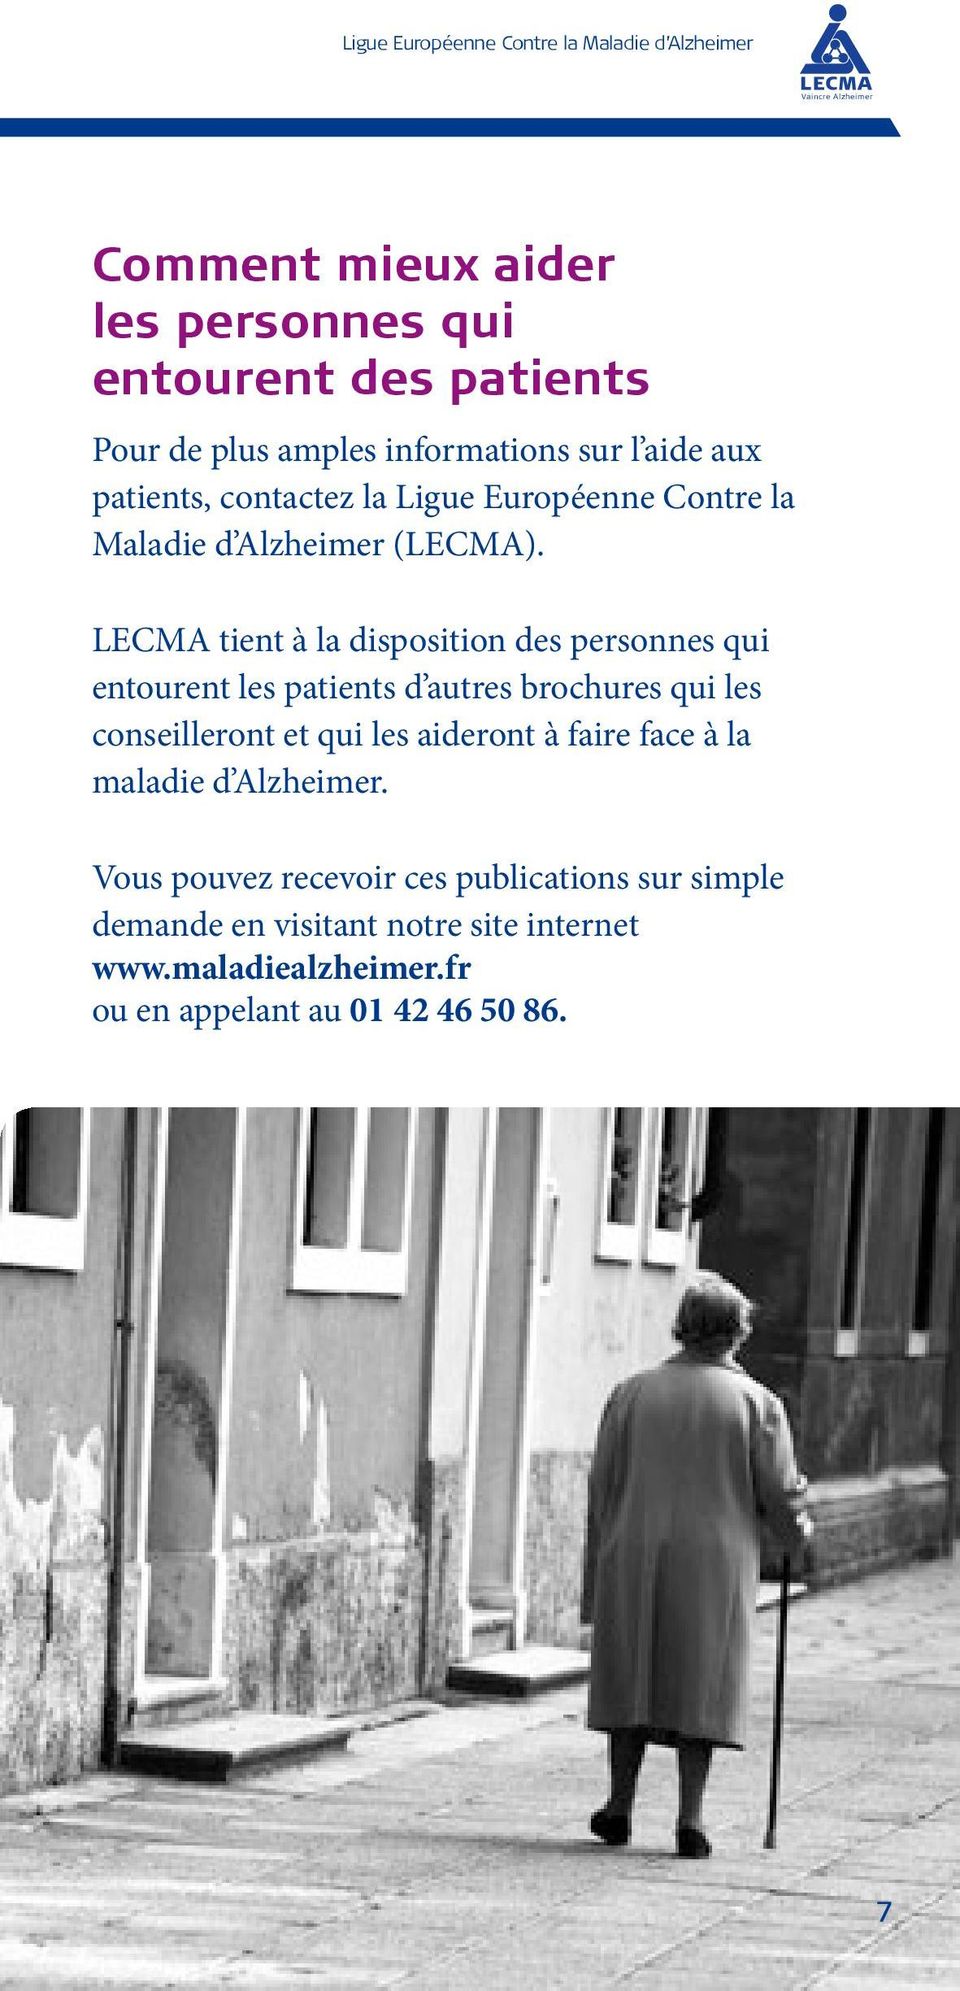 LECMA tient à la disposition des personnes qui entourent les patients d autres brochures qui les conseilleront et qui les aideront à faire